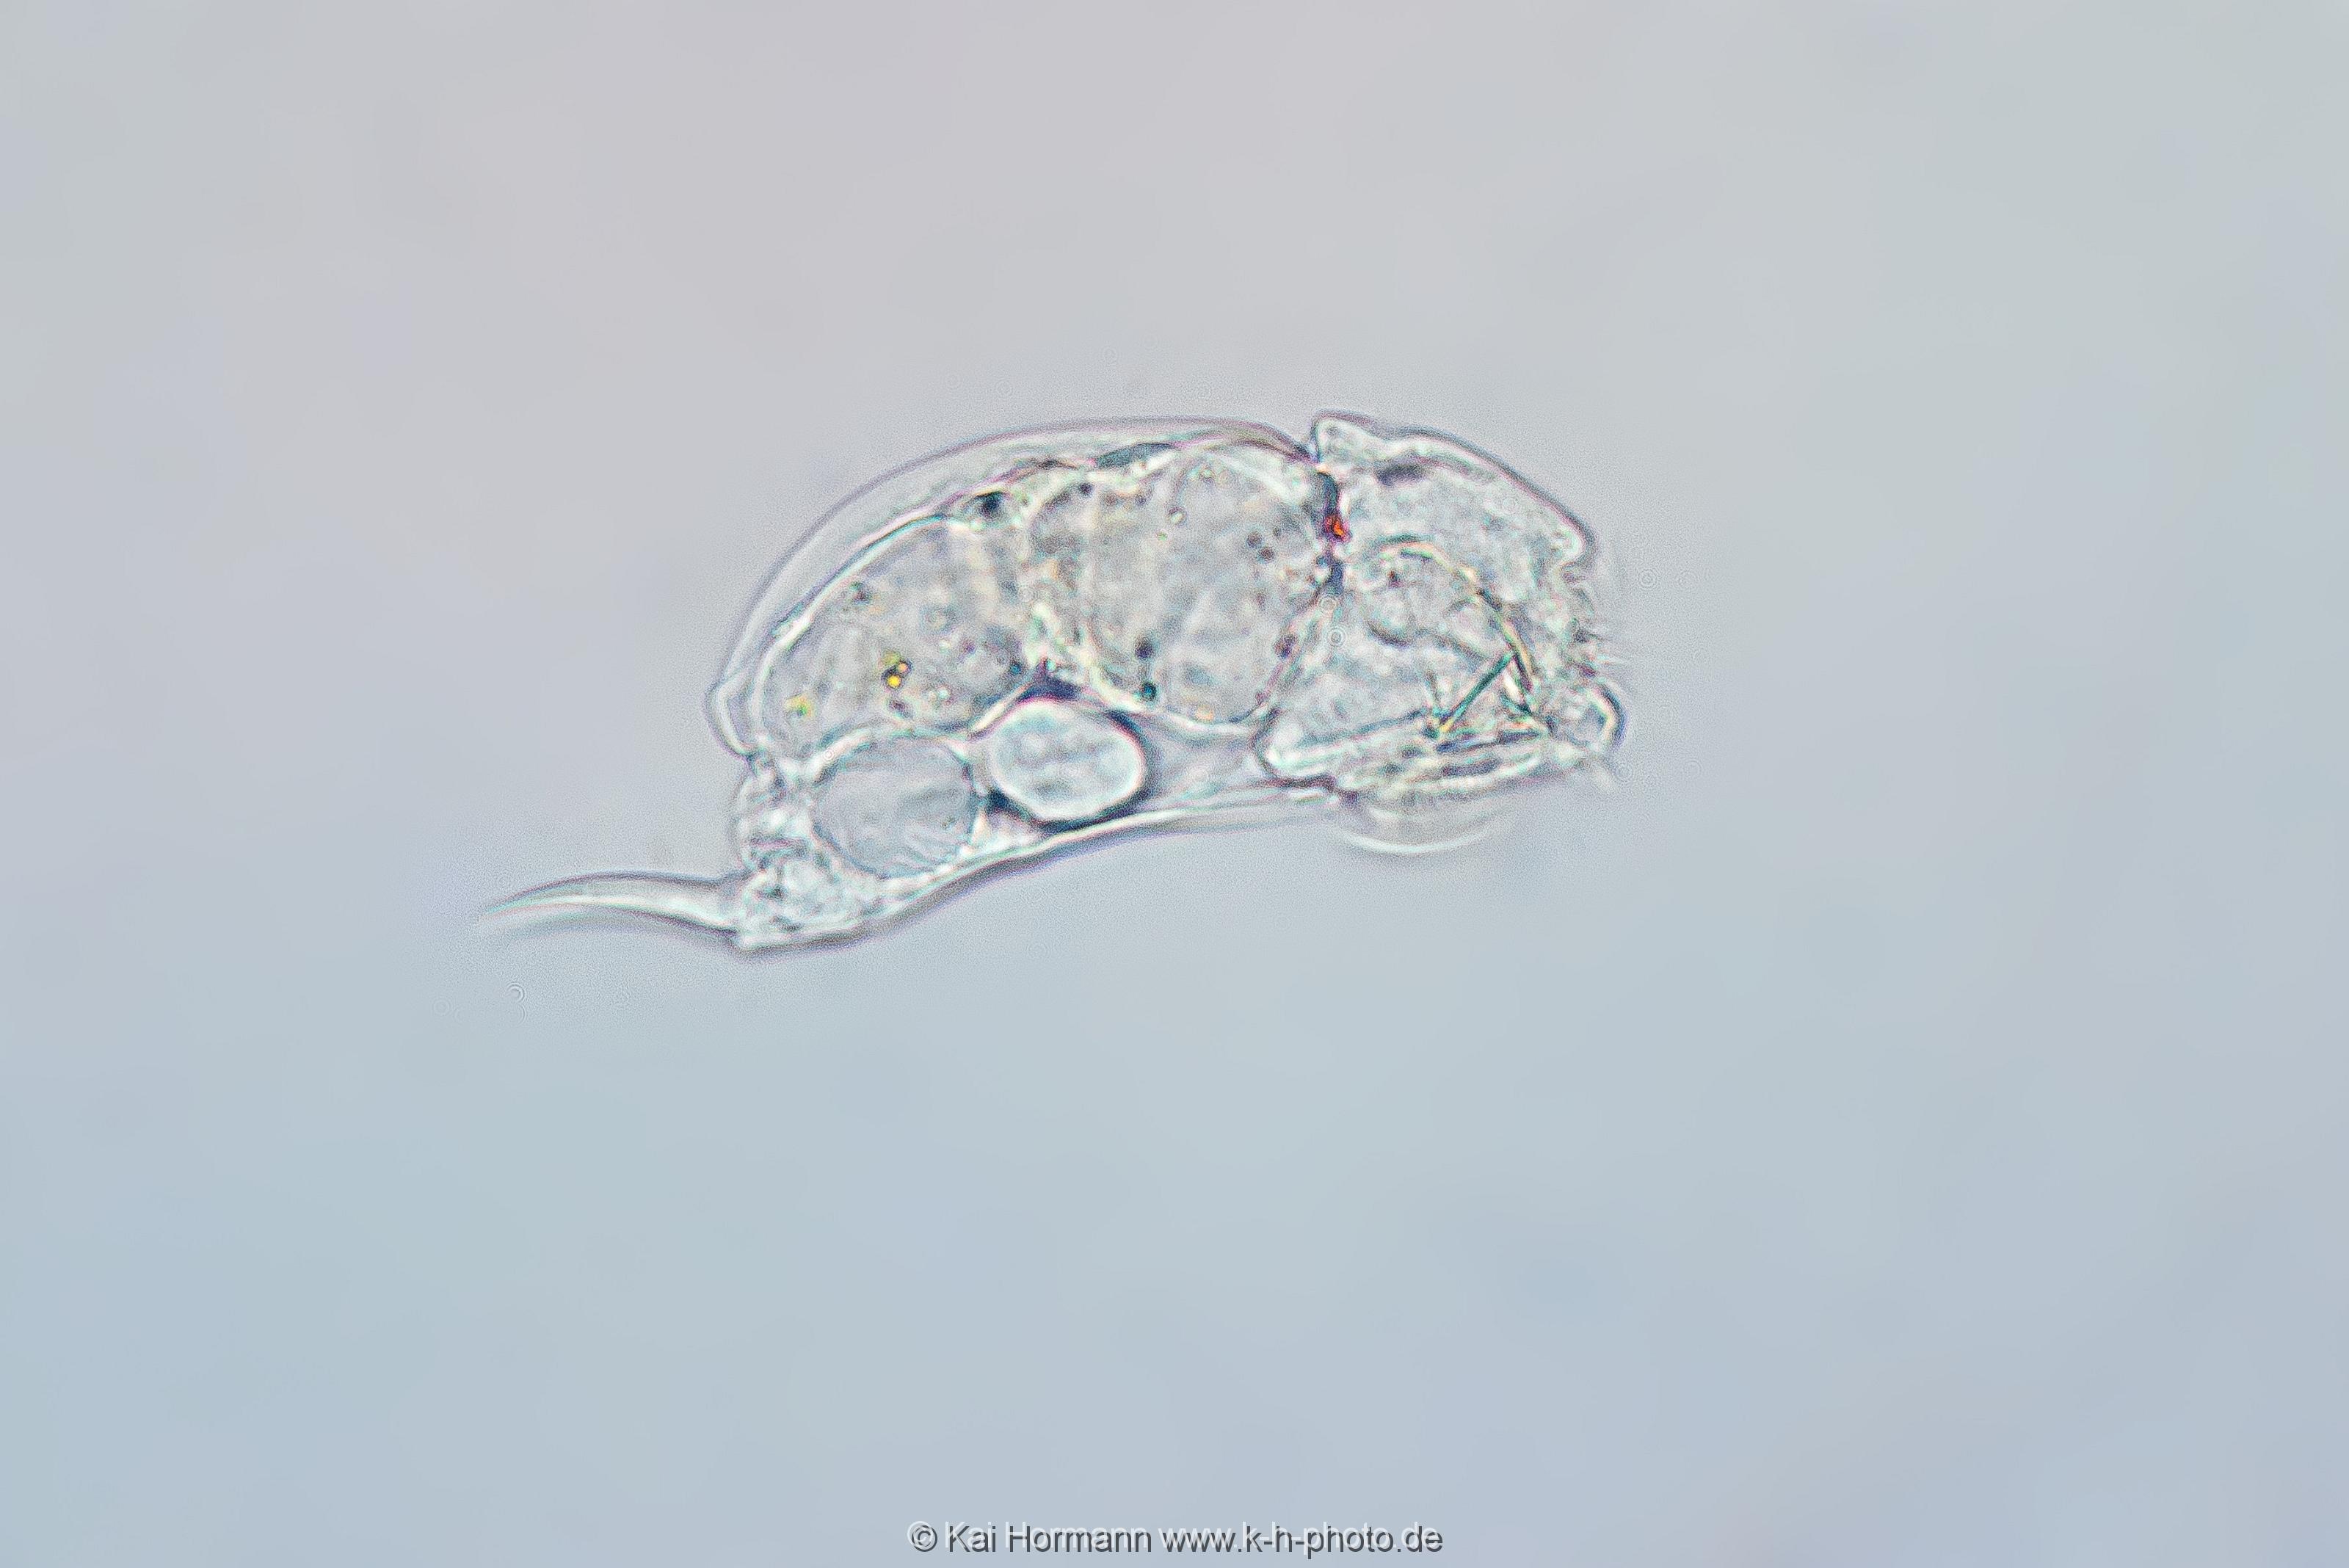 Mützen-Rädertier (Seitenansicht). Mikrofotografie: Mikroskopische Aufnahmen von Einzellern, Algen und Kleinstlebewesen.